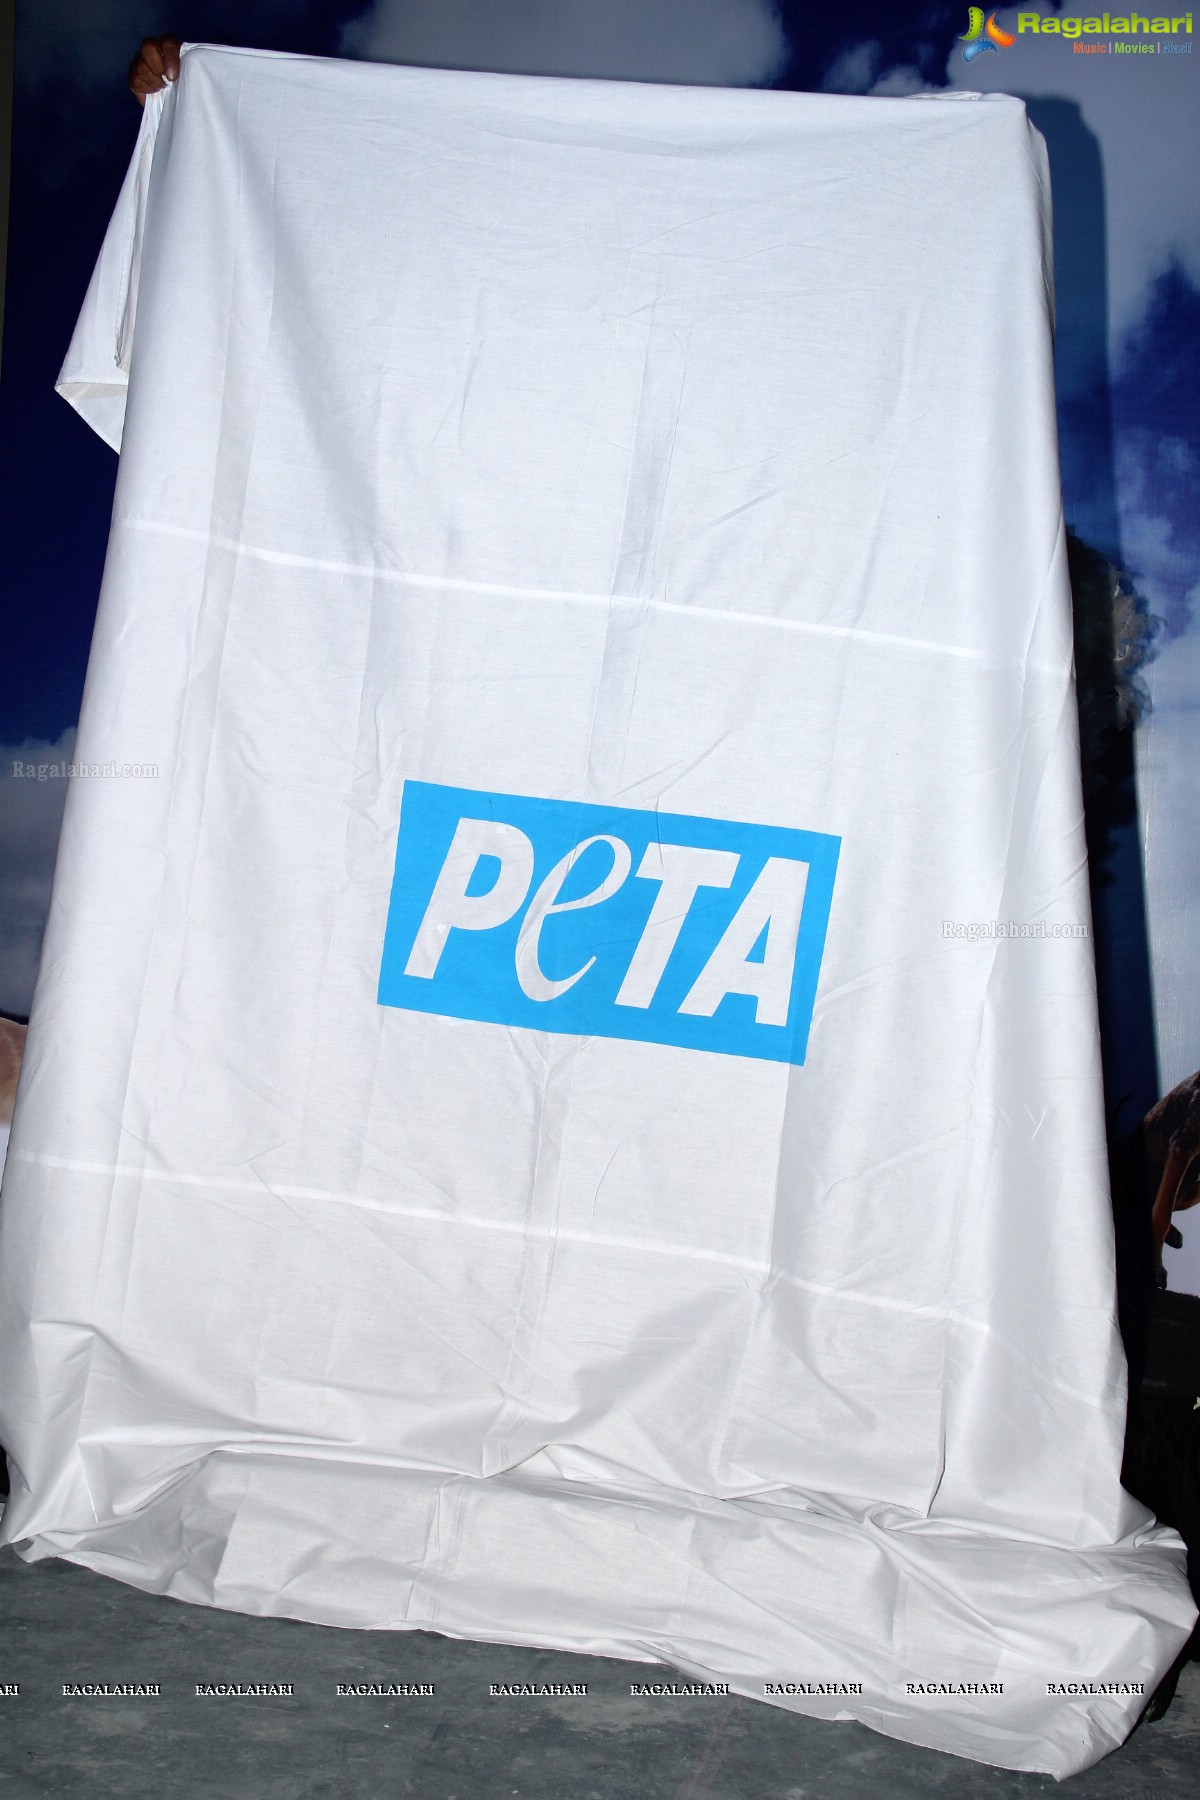 PETA Press Meet with Sania Mirza, Hyderabad